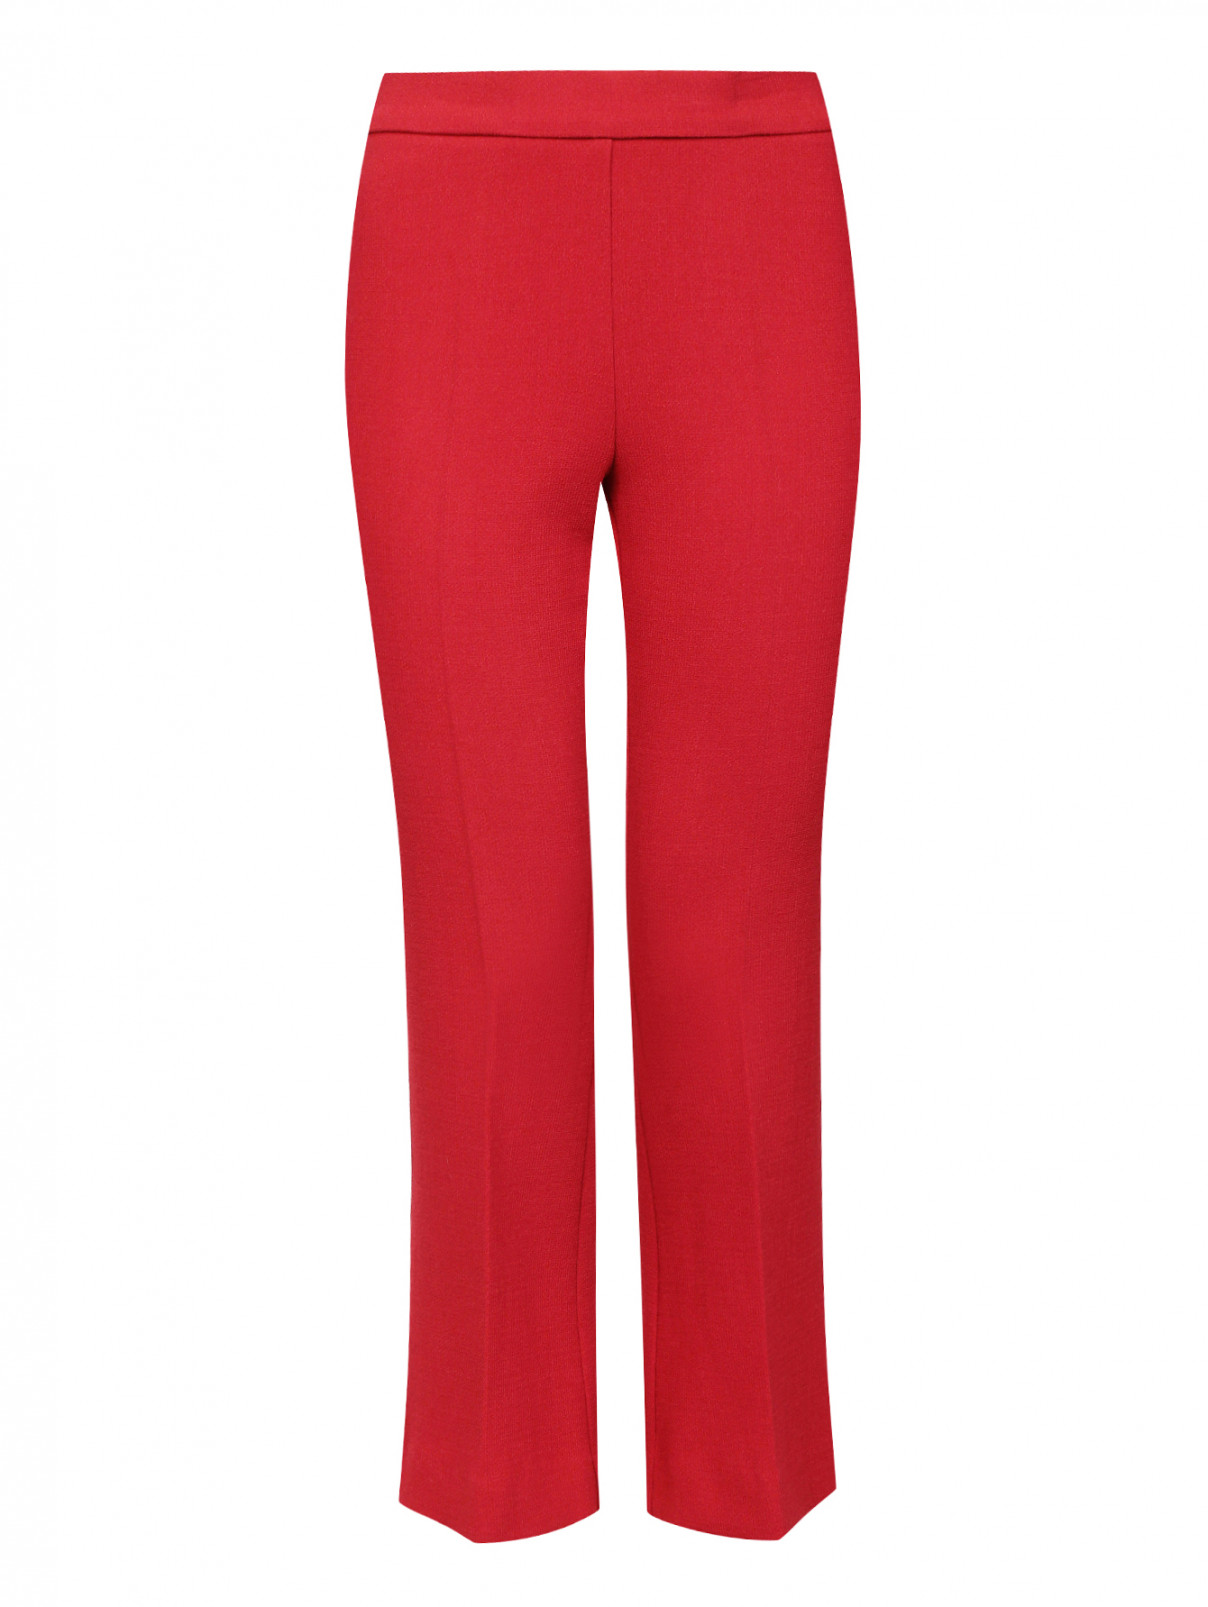 Укороченные брюки-клеш из шерсти P.A.R.O.S.H.  –  Общий вид  – Цвет:  Красный